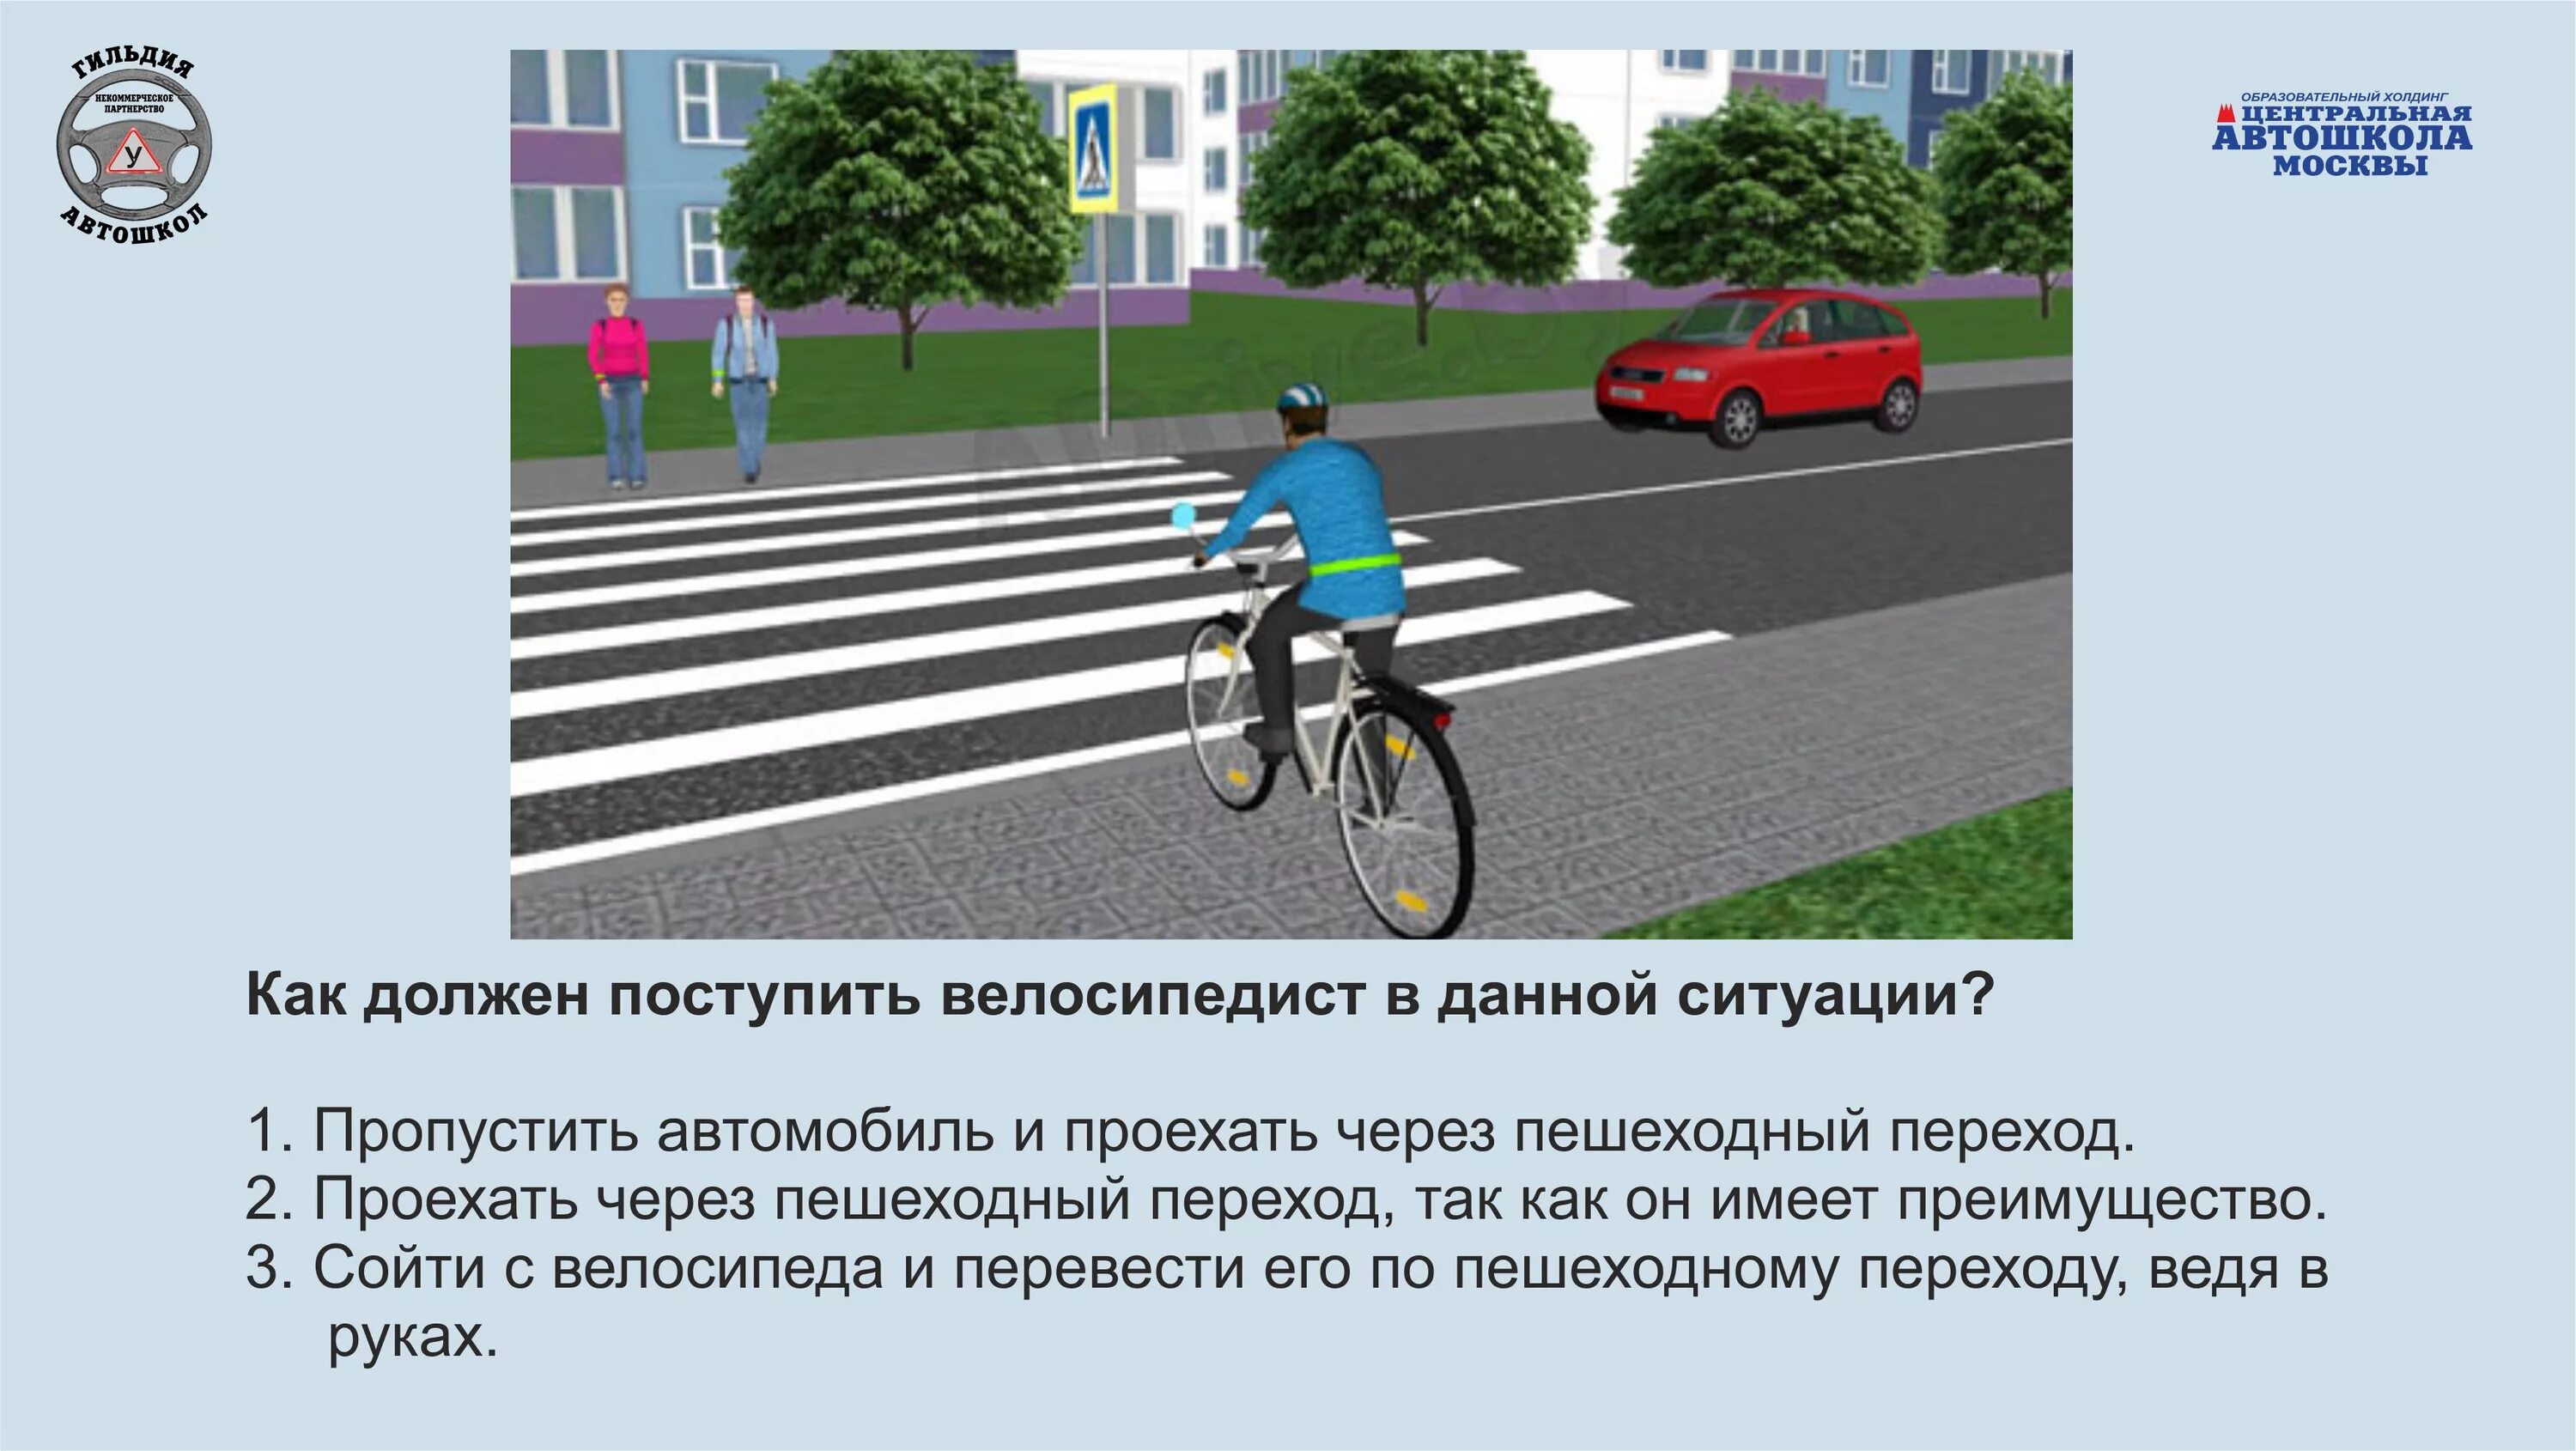 ПДД для пешеходов и велосипедистов. Дорожные ситуации для велосипедистов. ПДД для велосипедистов. Правило дорожного движения для велосипедистов. Пропустить велосипедистов